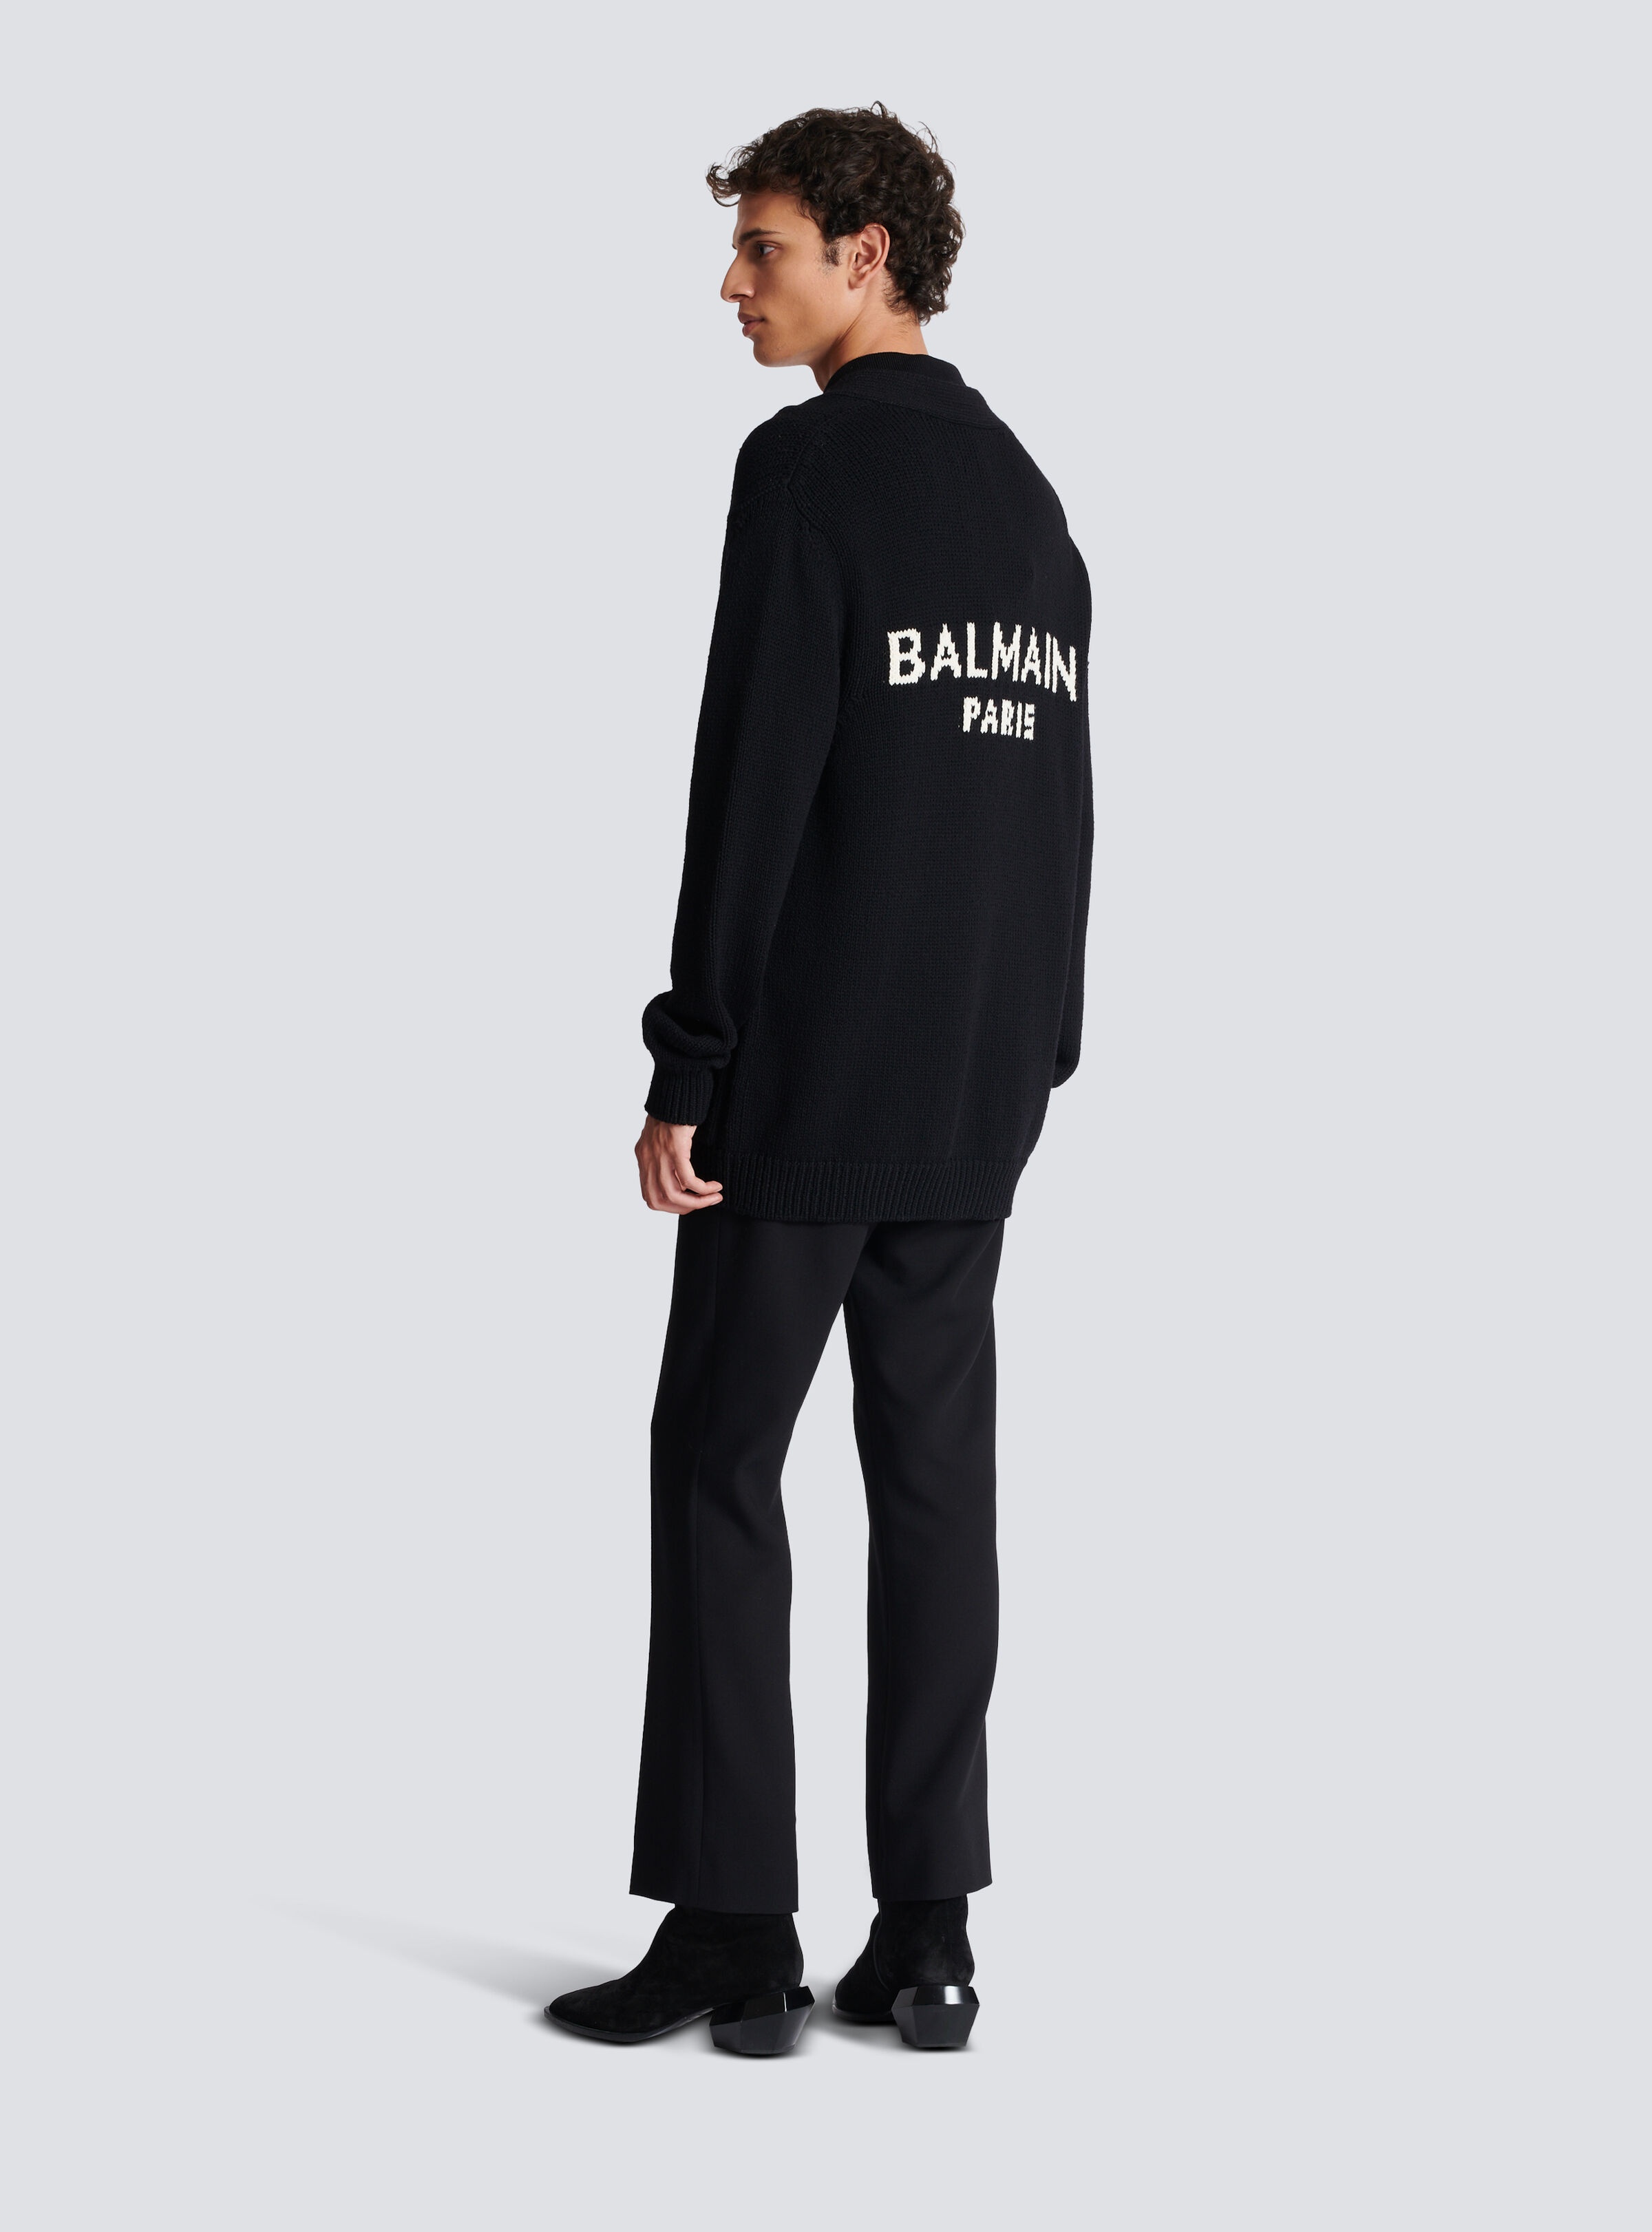 Knit cardigan with Balmain logo - 4